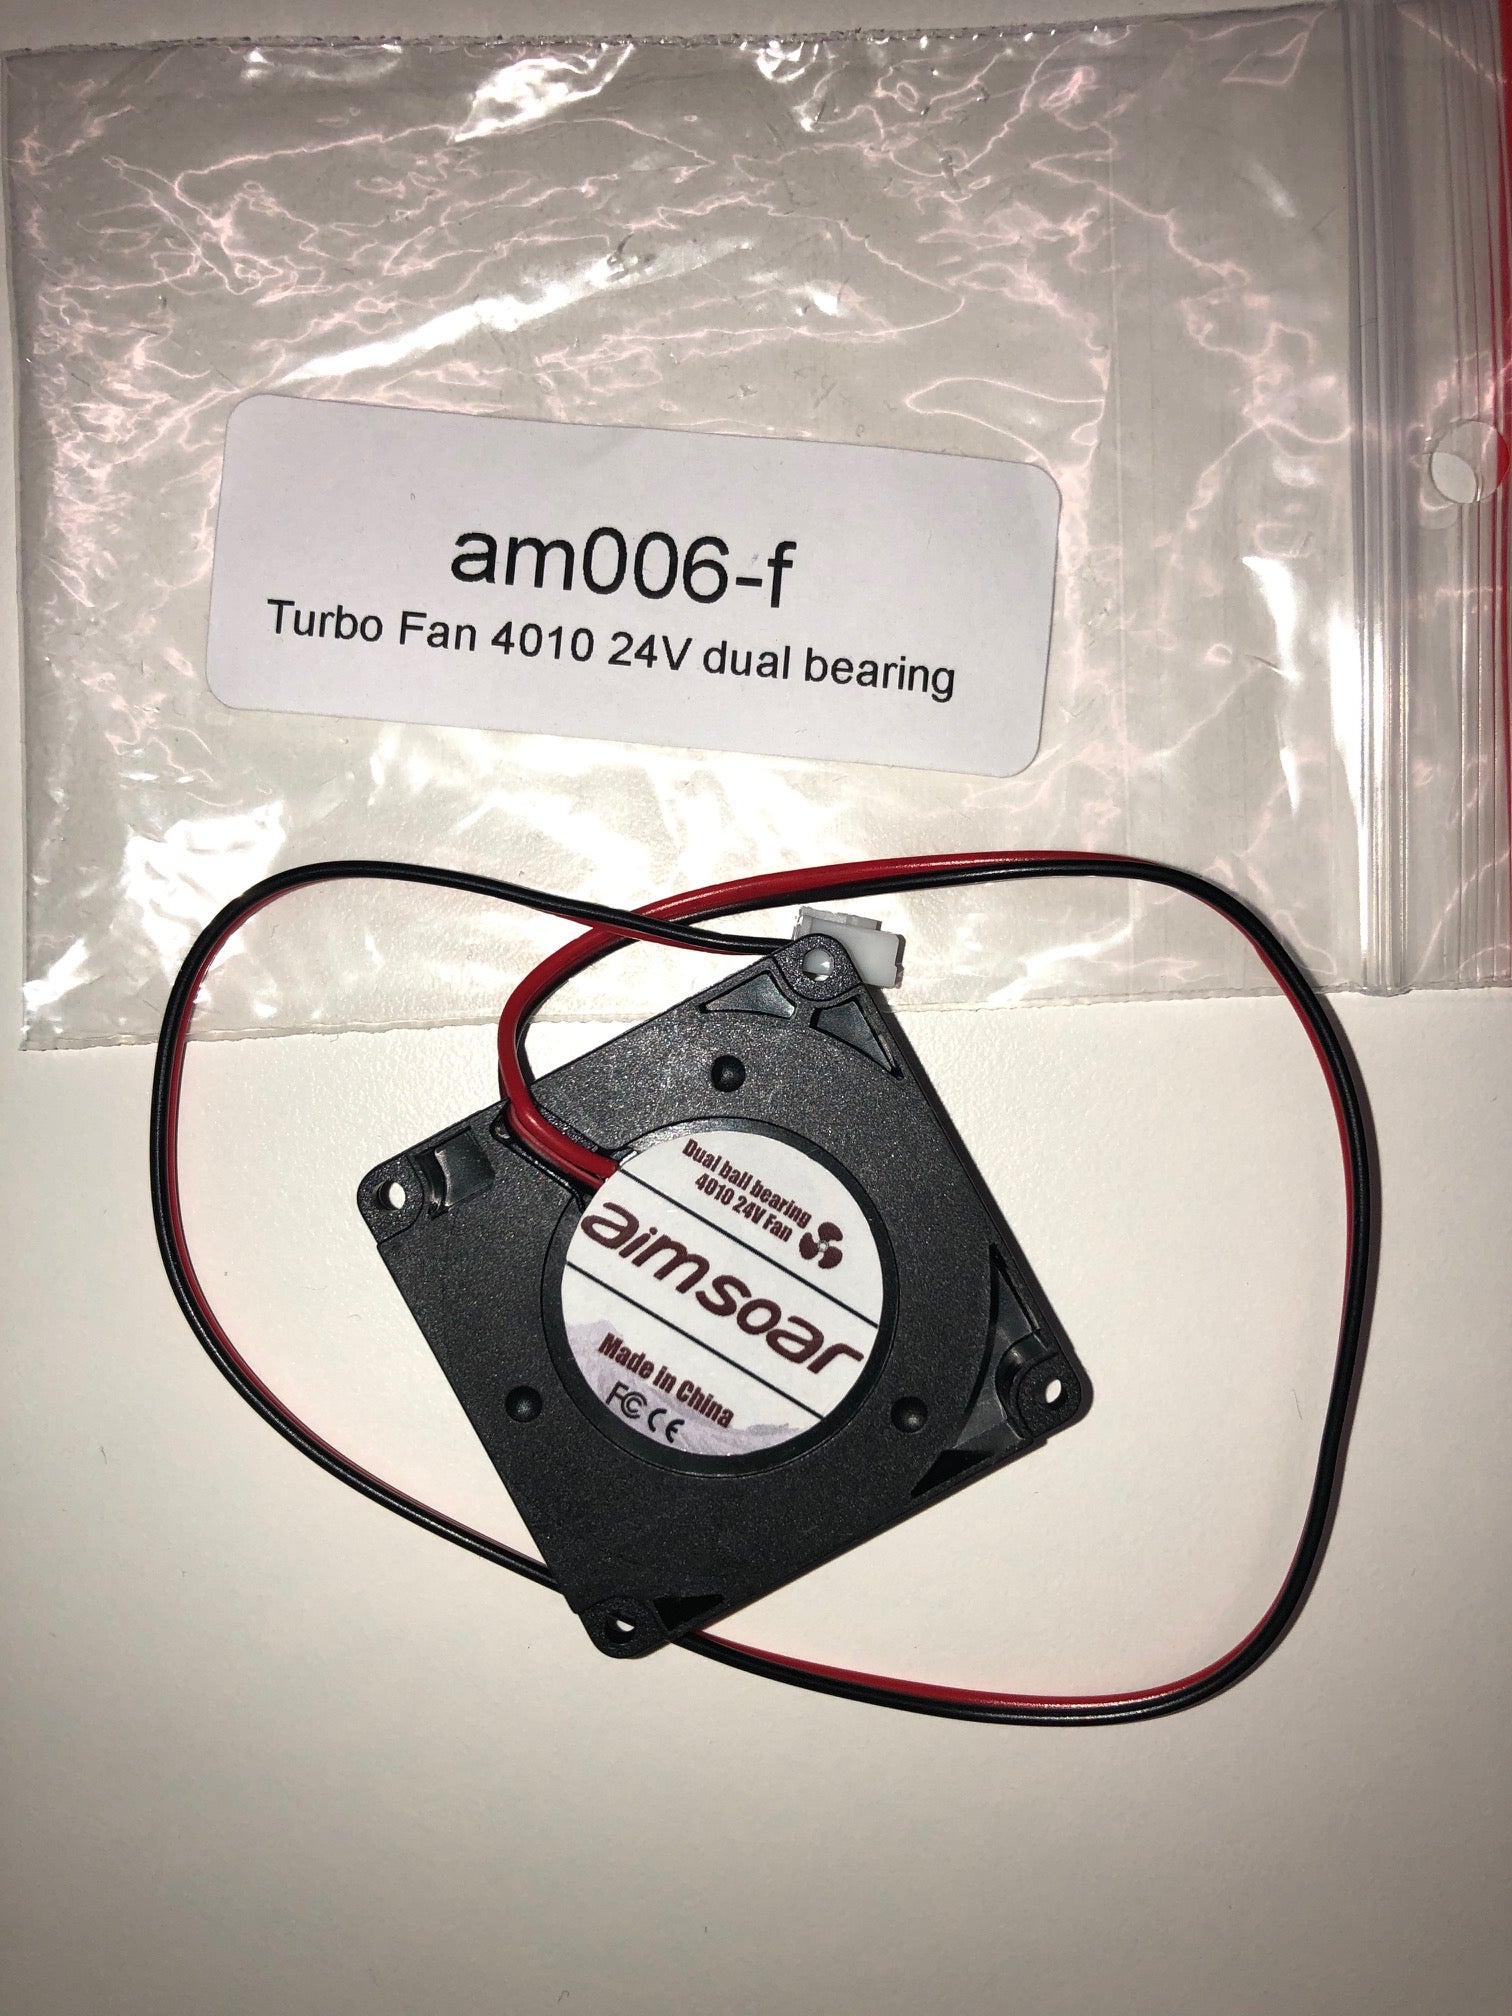 turbo fan am006-f front 24v 4010